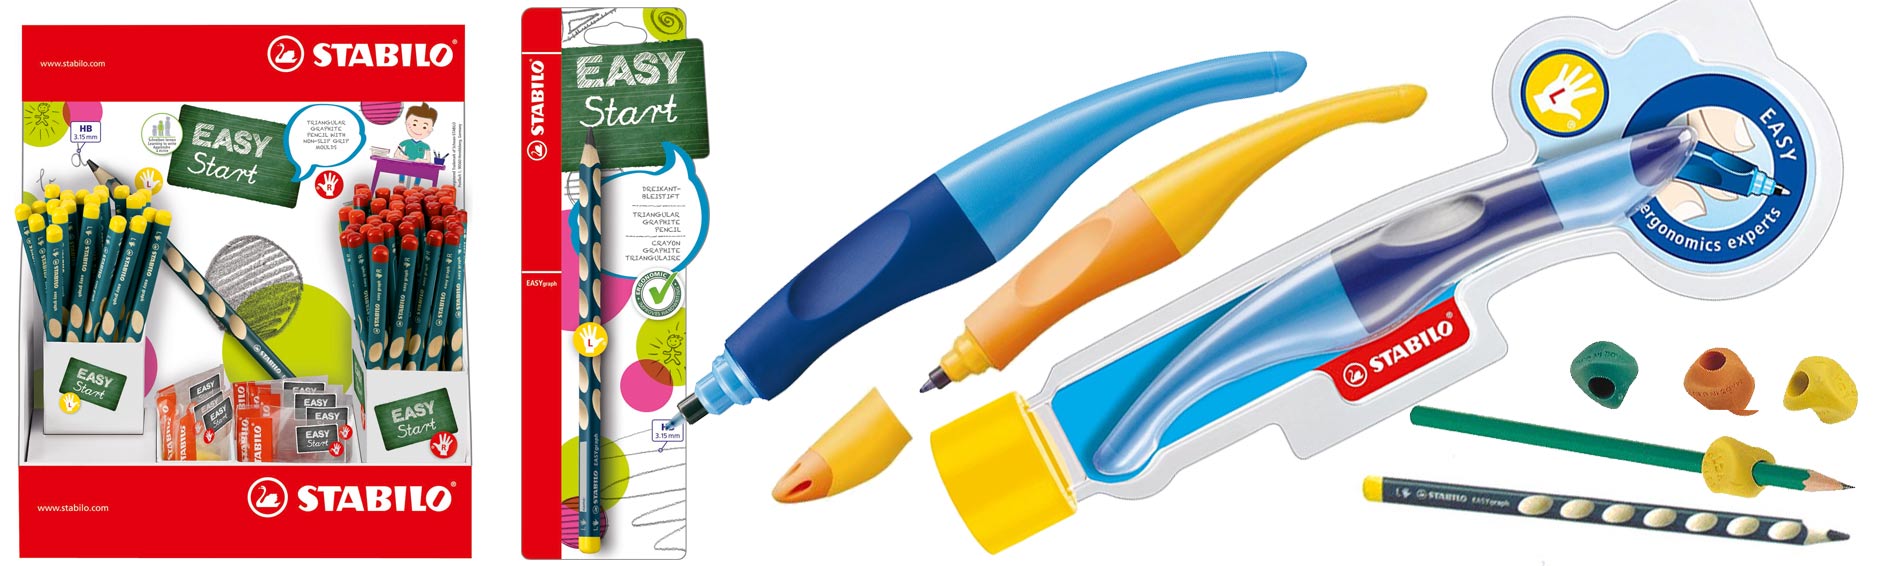 colori, matite, materiali per creare, libri didattici per ragazzi